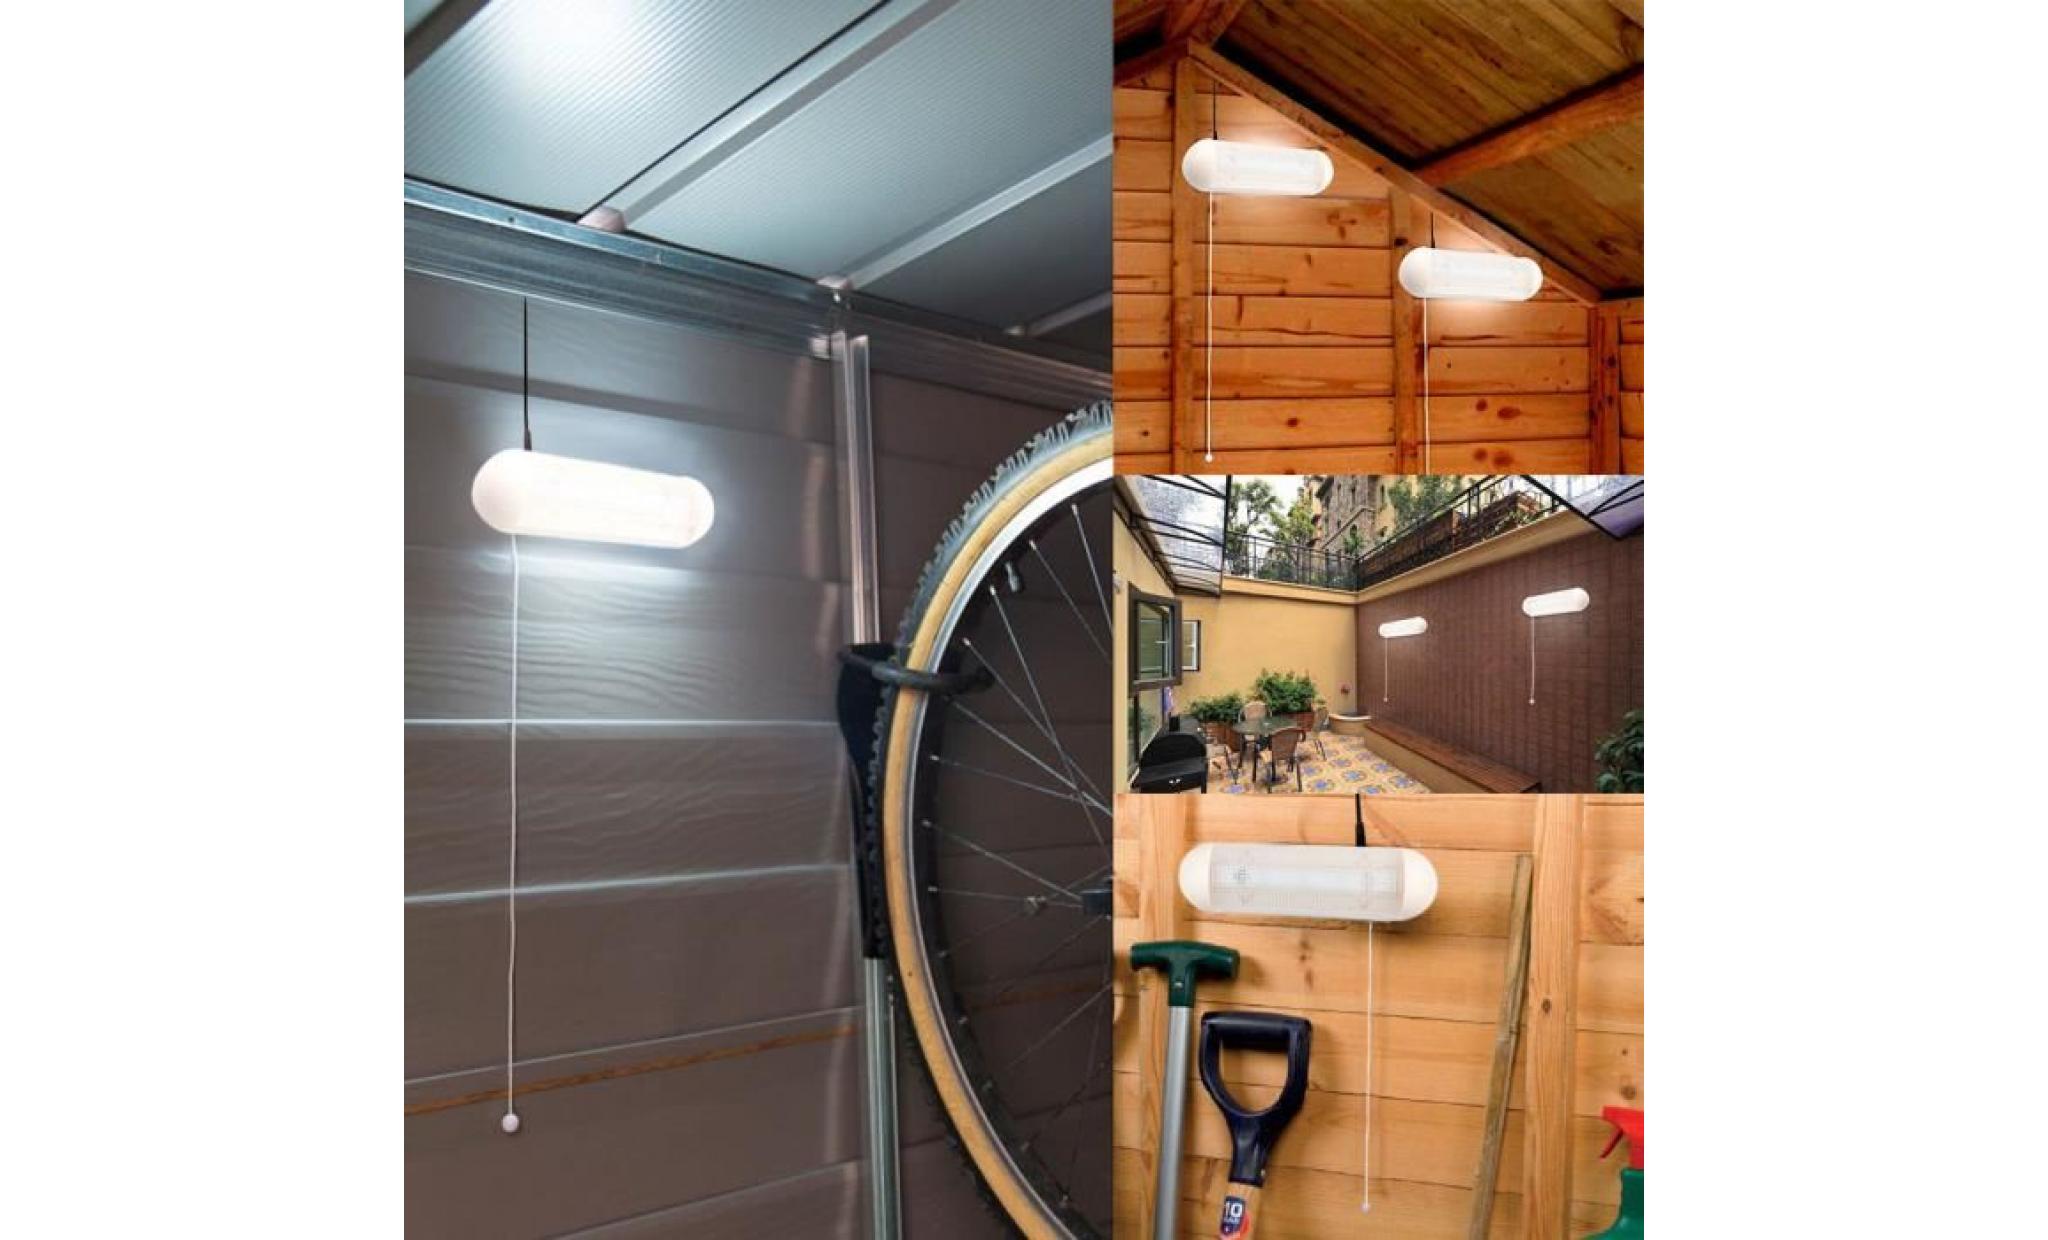 1 à 2 pcs solaire 10 w 5led mur lumière blanc rechargeable avec pull cordon interrupteur pour garage écurie stable jardin cour pas cher